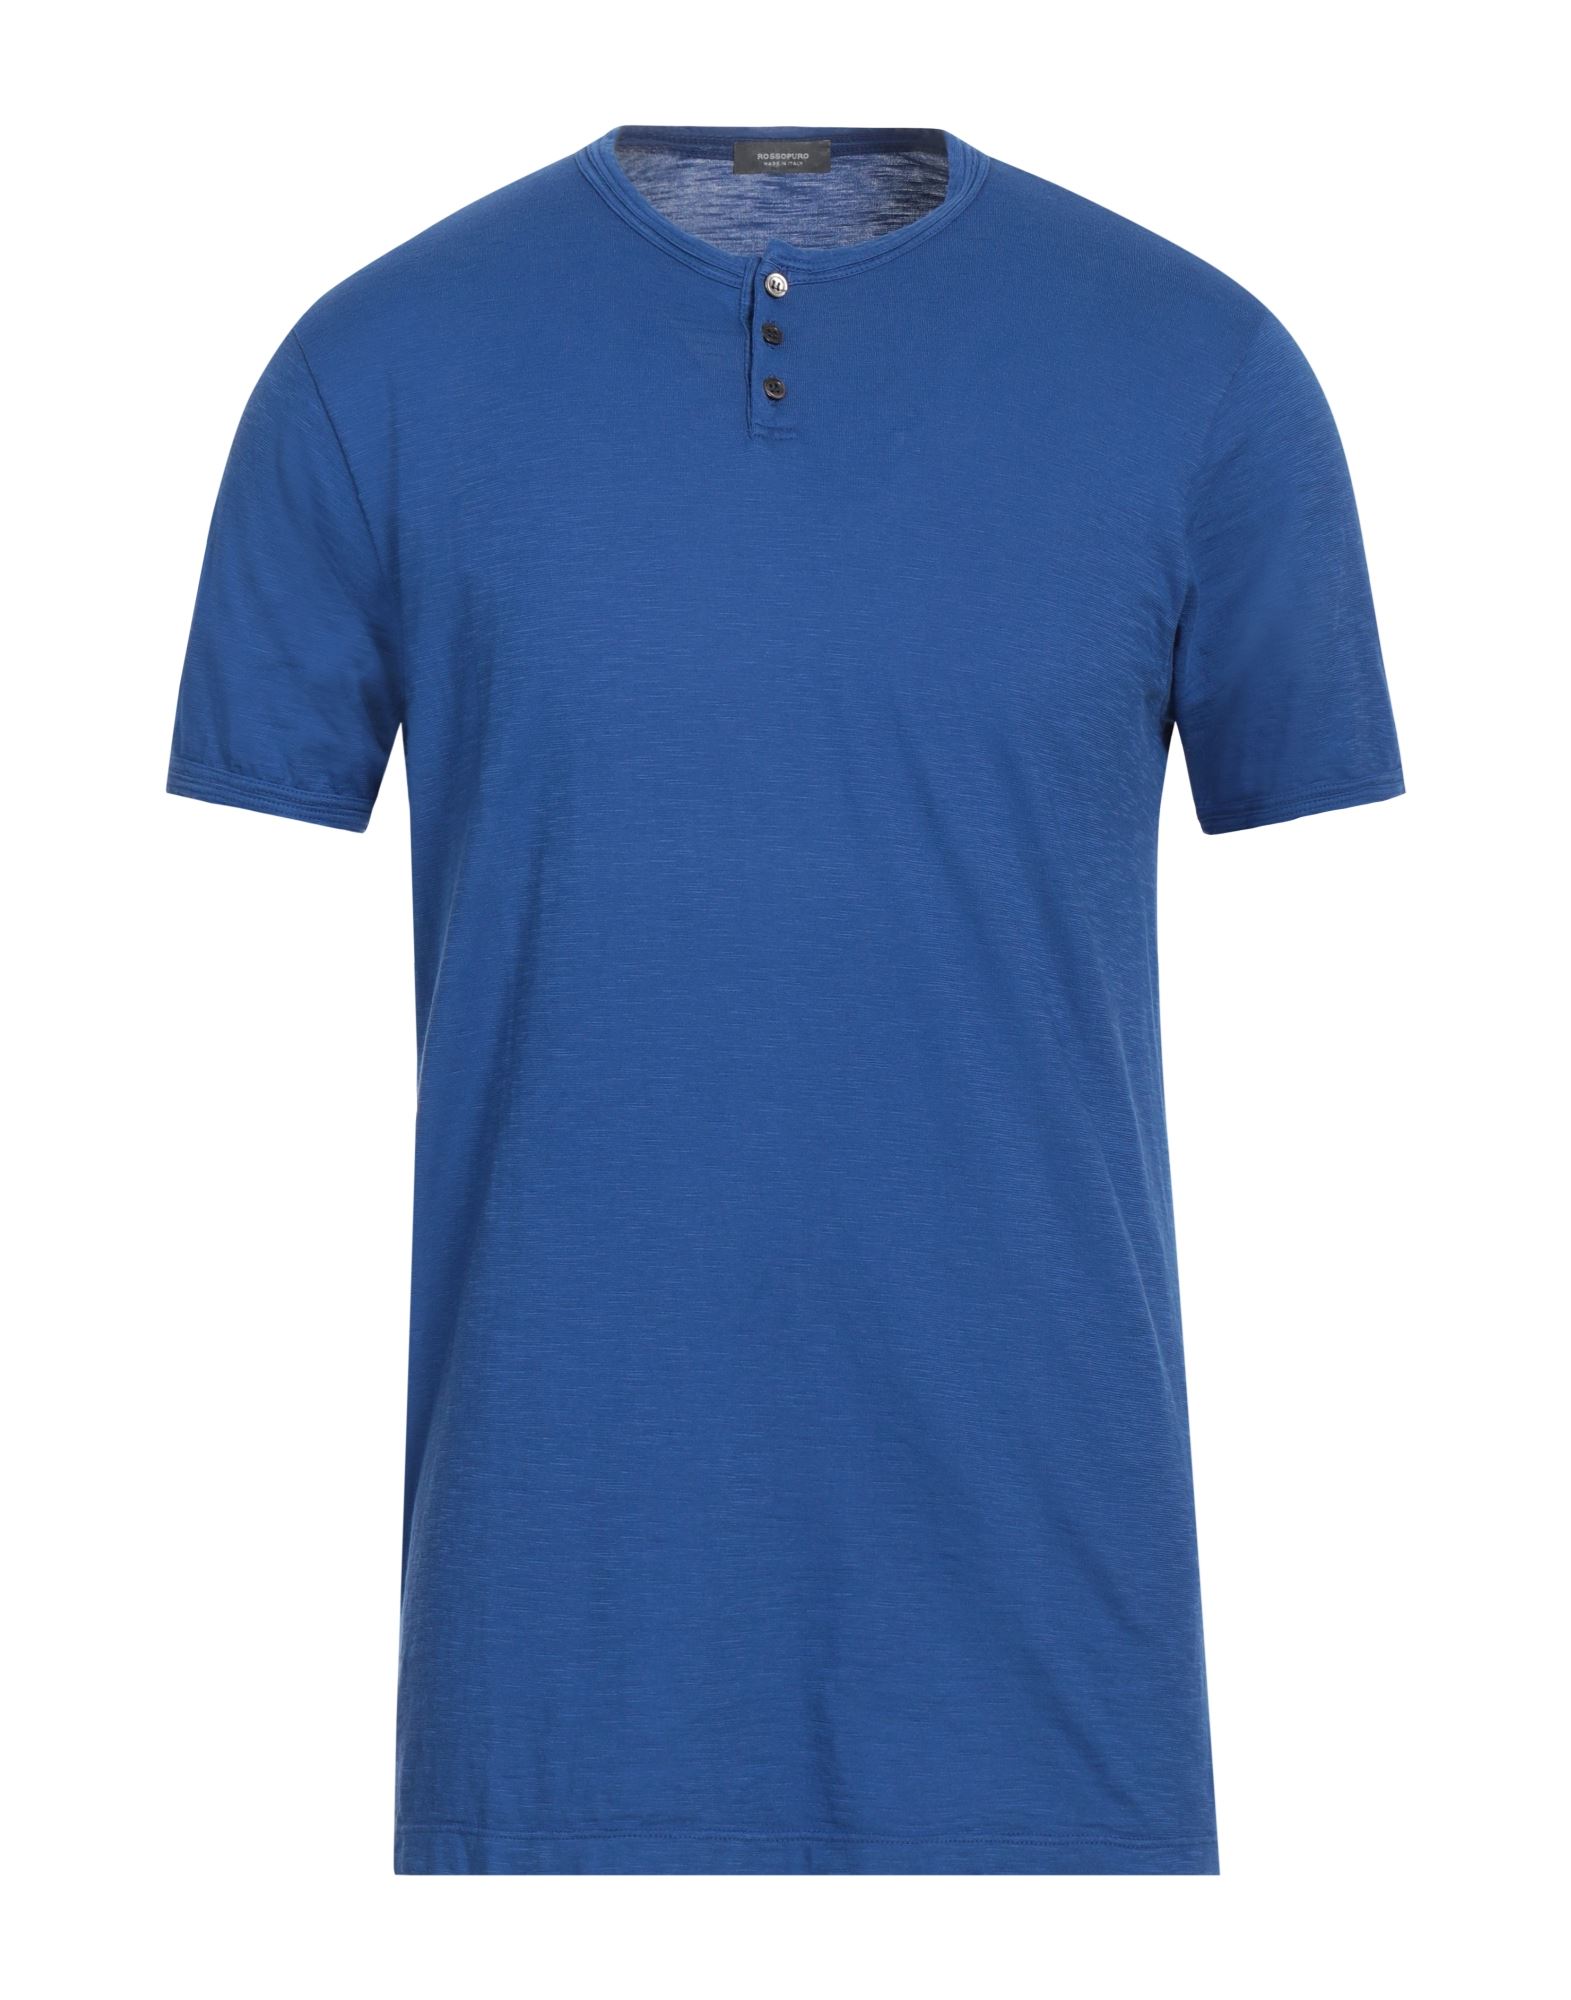 ROSSOPURO T-shirts Herren Blau von ROSSOPURO